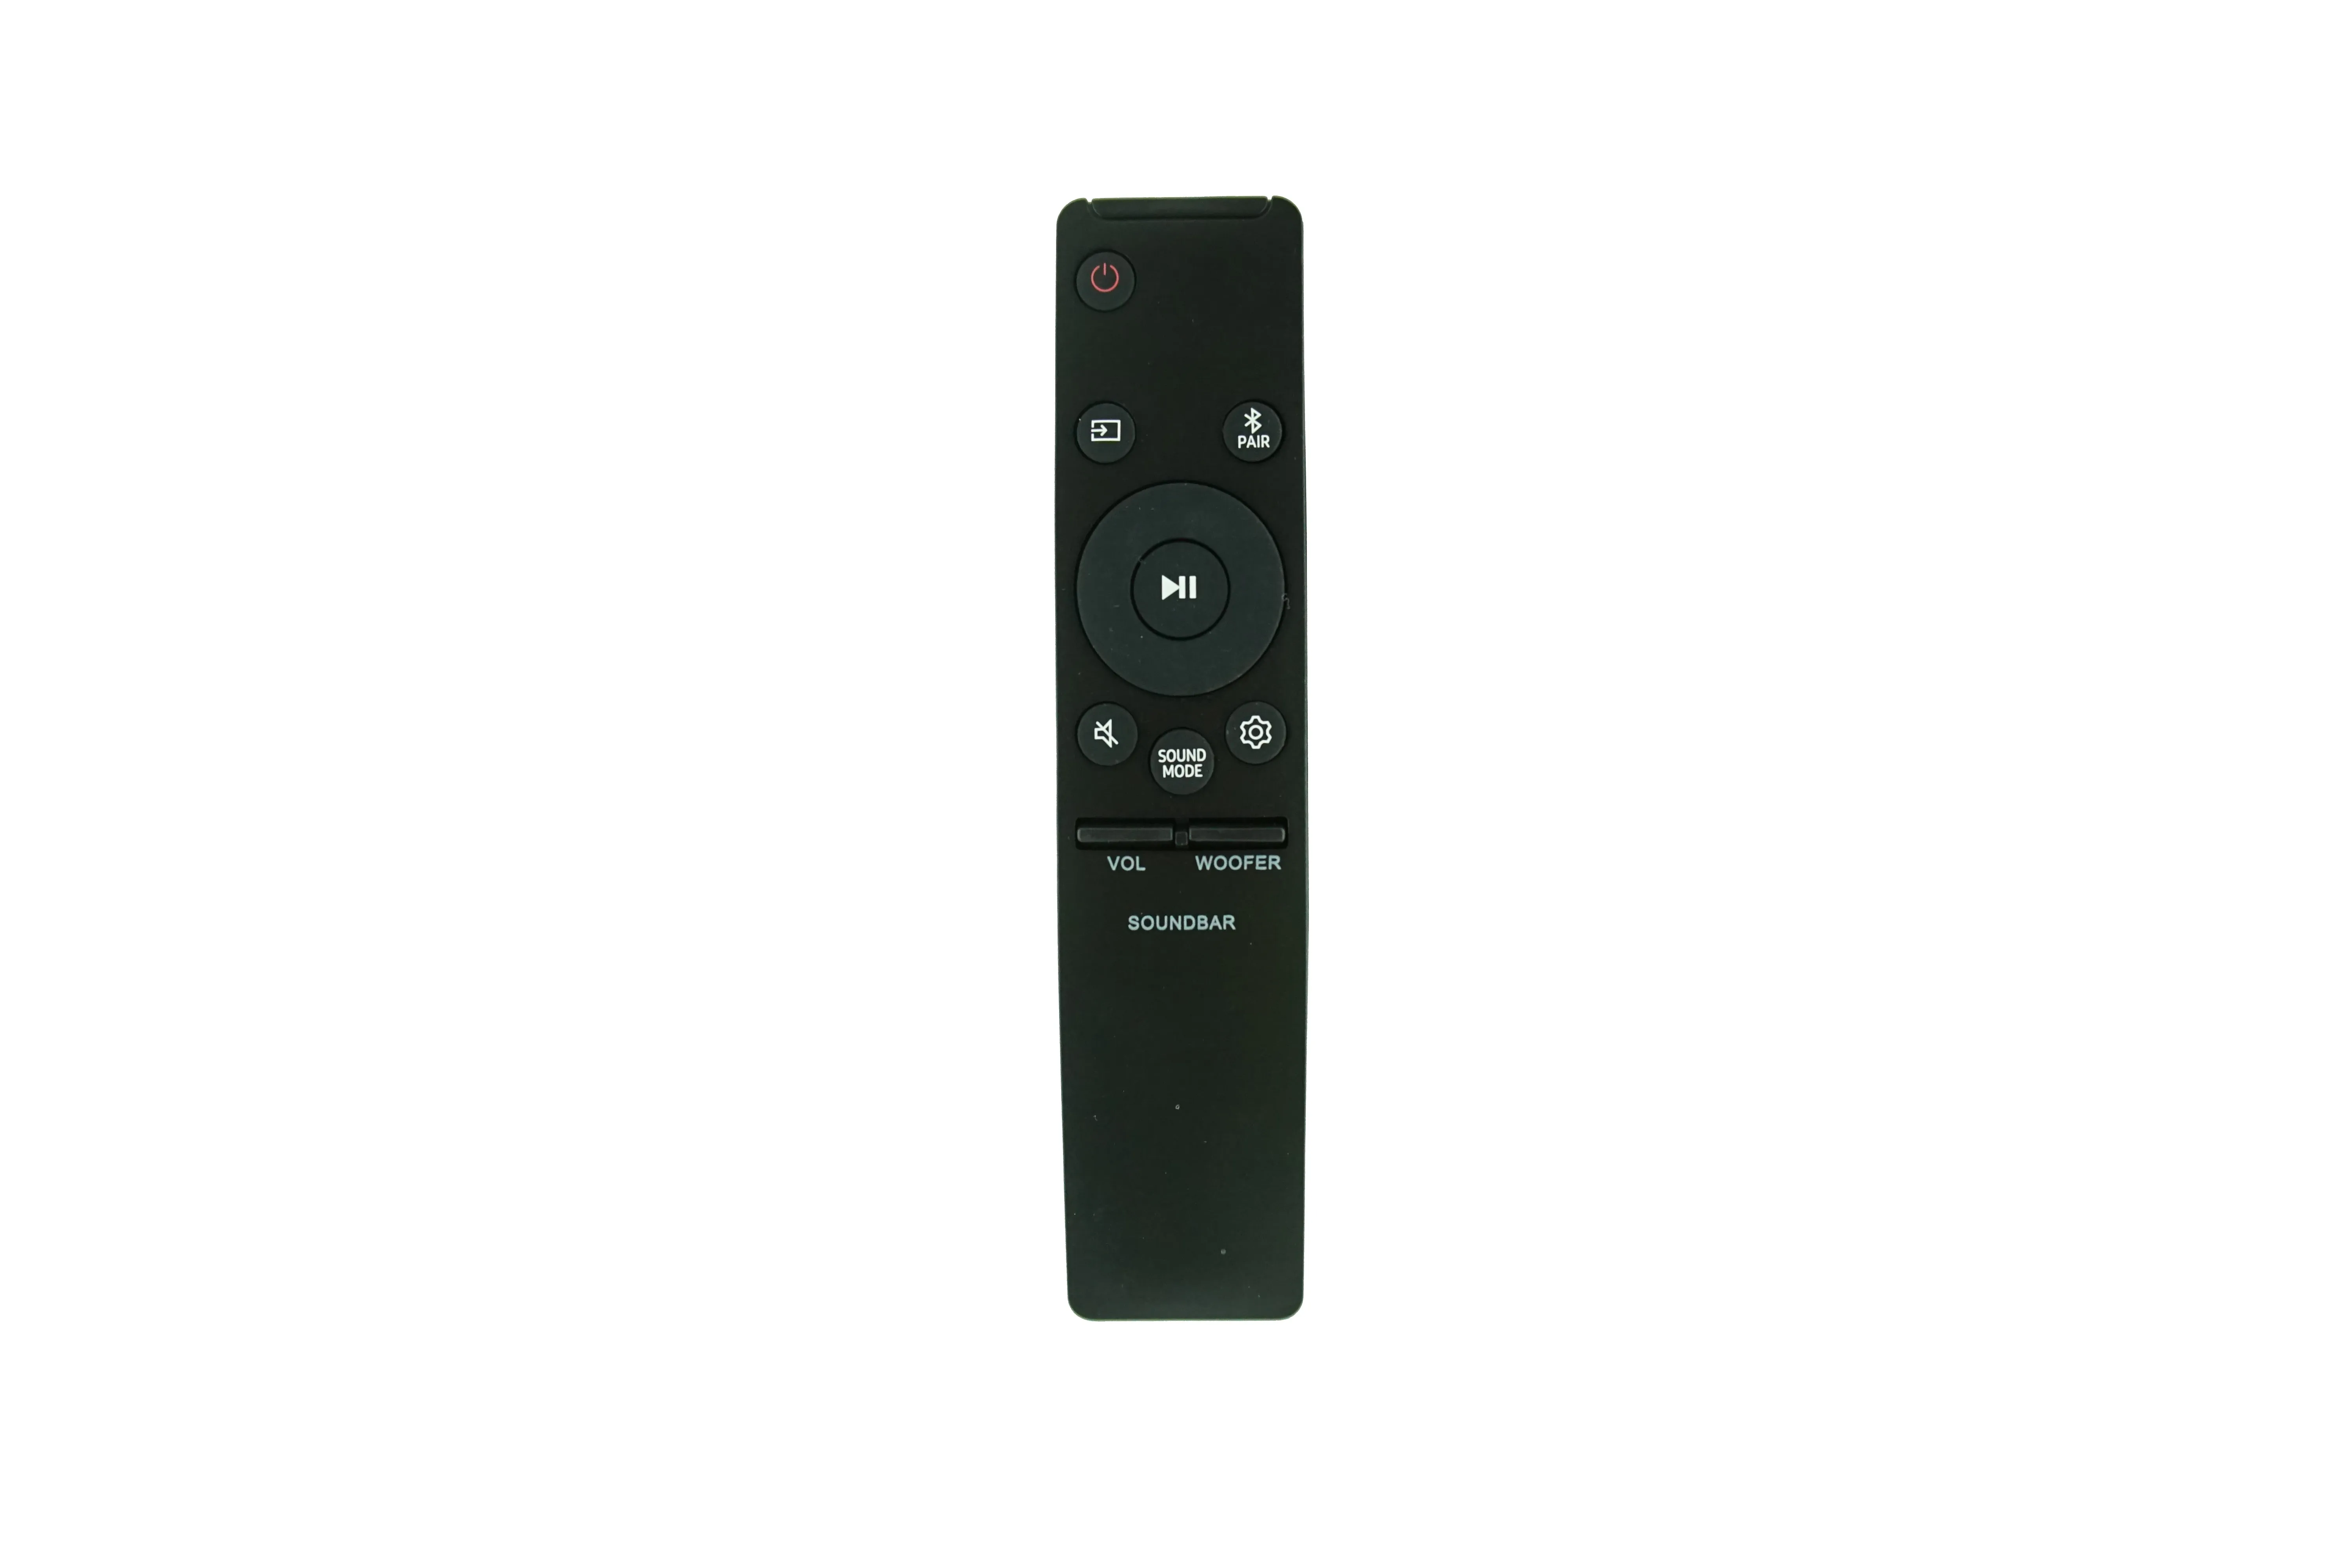 Telecomando per Samsung AH59-02767A AH59-02767C HW-N450 HW-N550 HW-N650 HW-N450/ZA HW-N550/ZA HW-N650/ZA HW-N450/ZC HW-N960 Home Theater Soundbar Soundbar Sistema audio